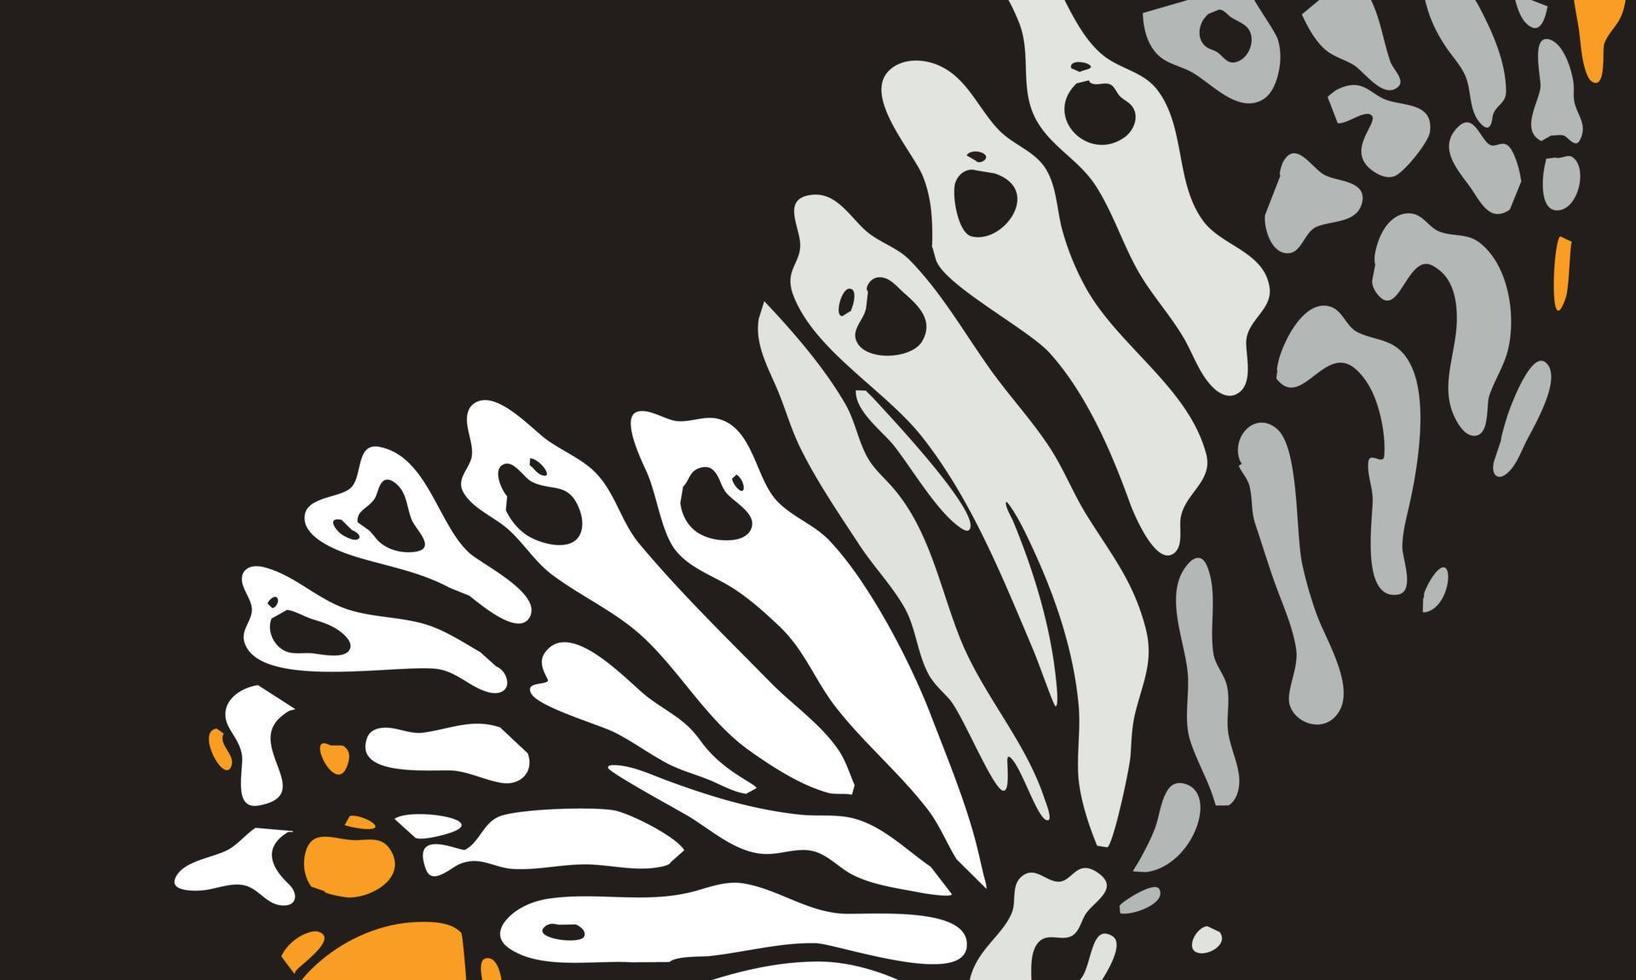 vector de estilo de color de mariposa con fondo negro. alas de mariposa con color gris y naranja. plantillas de diseño para fondo, redes sociales, plantilla, póster, invitación, diseño de tarjeta y más